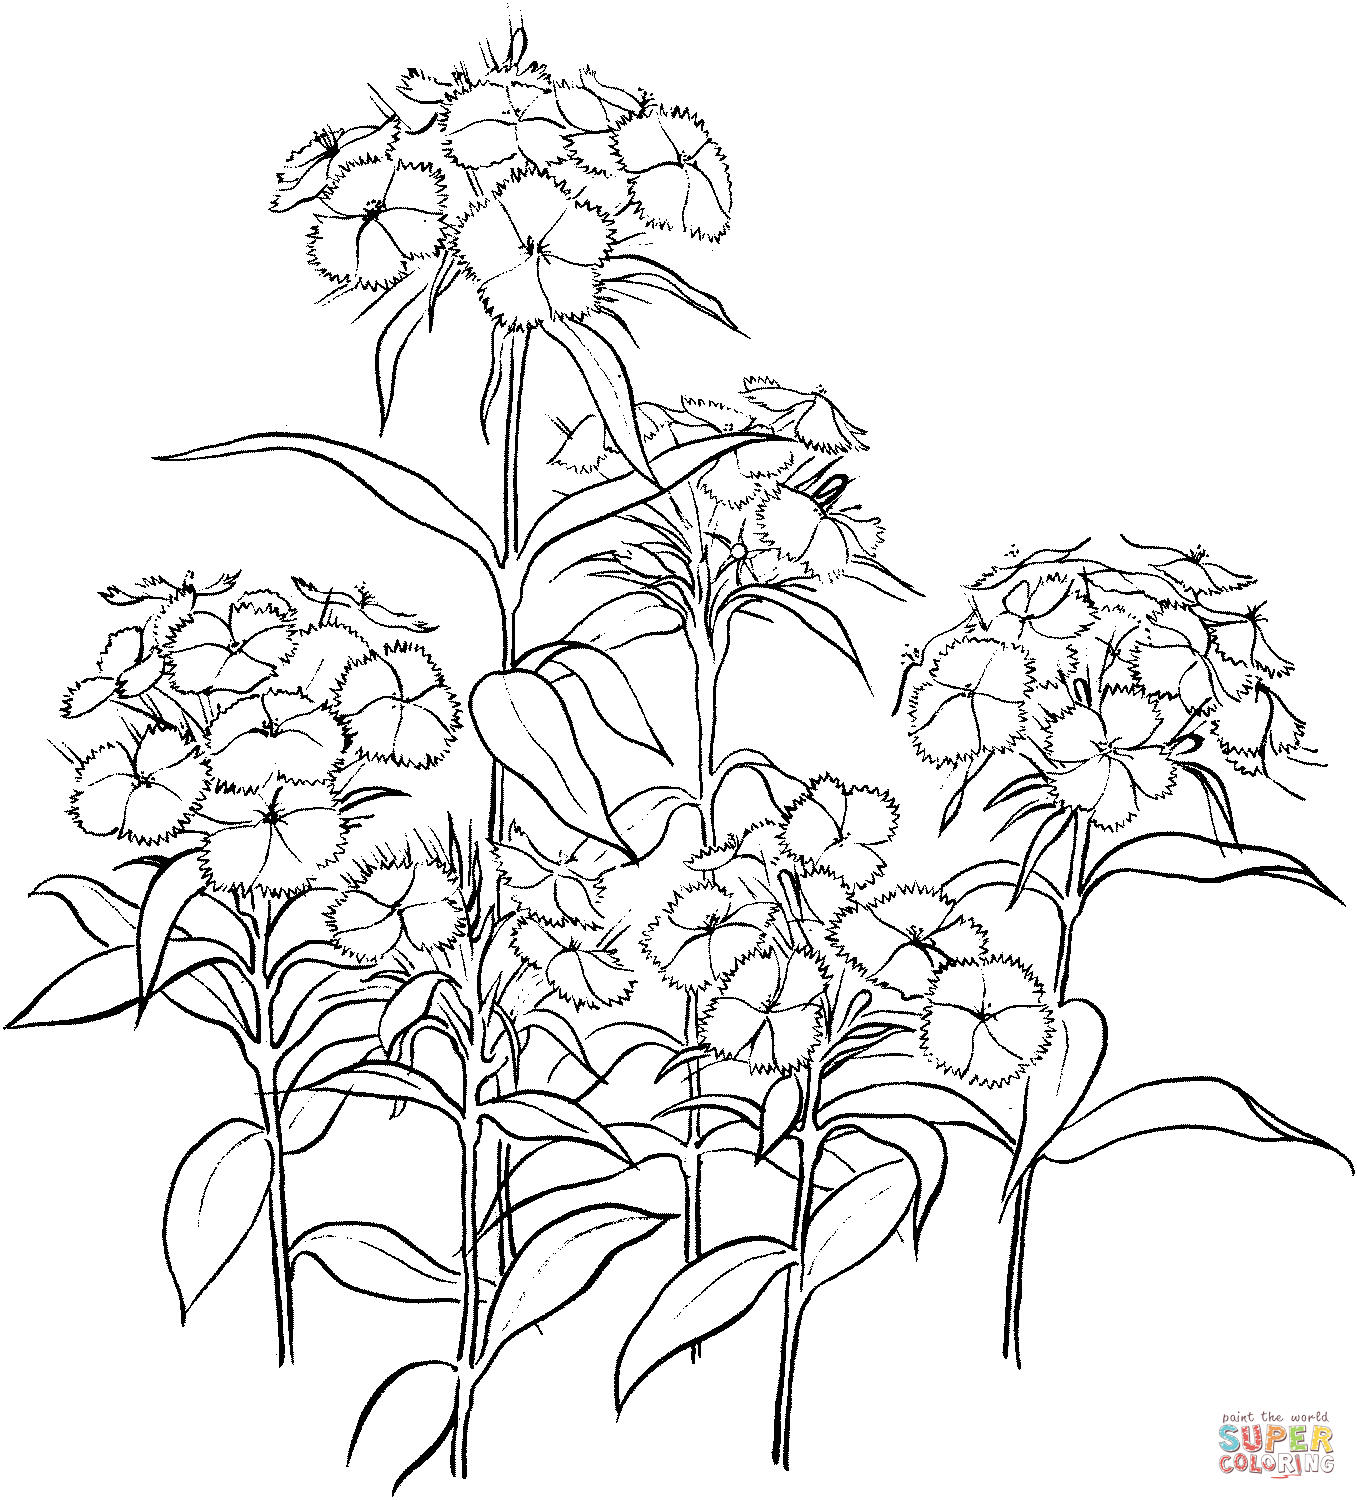 Dianthus 2 von Carnation